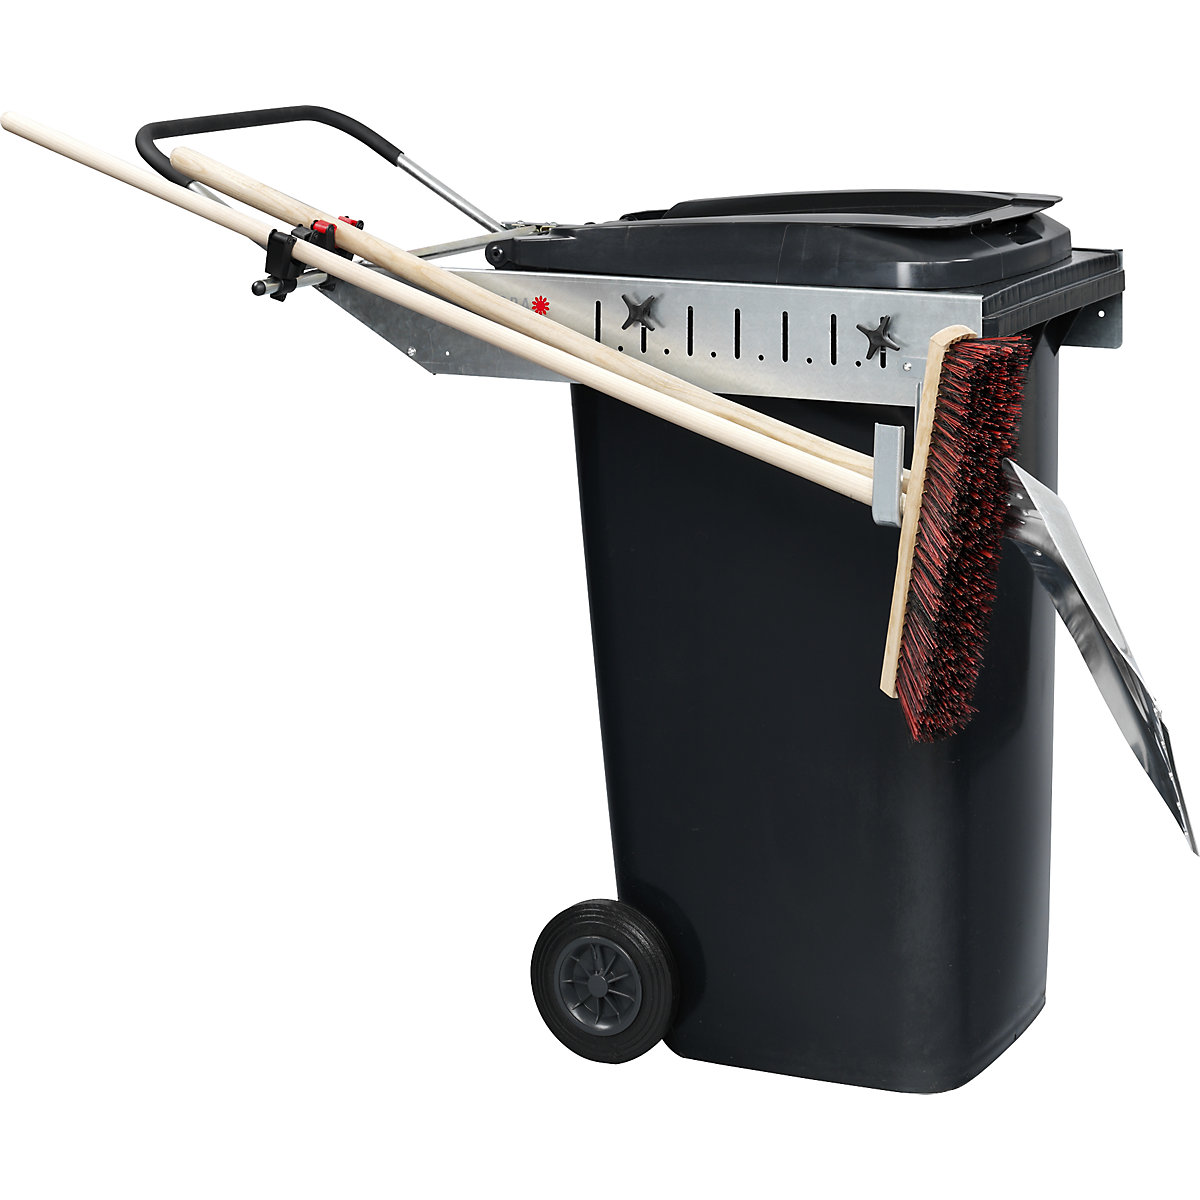 Armação para caixote do lixo CARRIER PICK UP – FLORA (Imagem do produto 2)-1